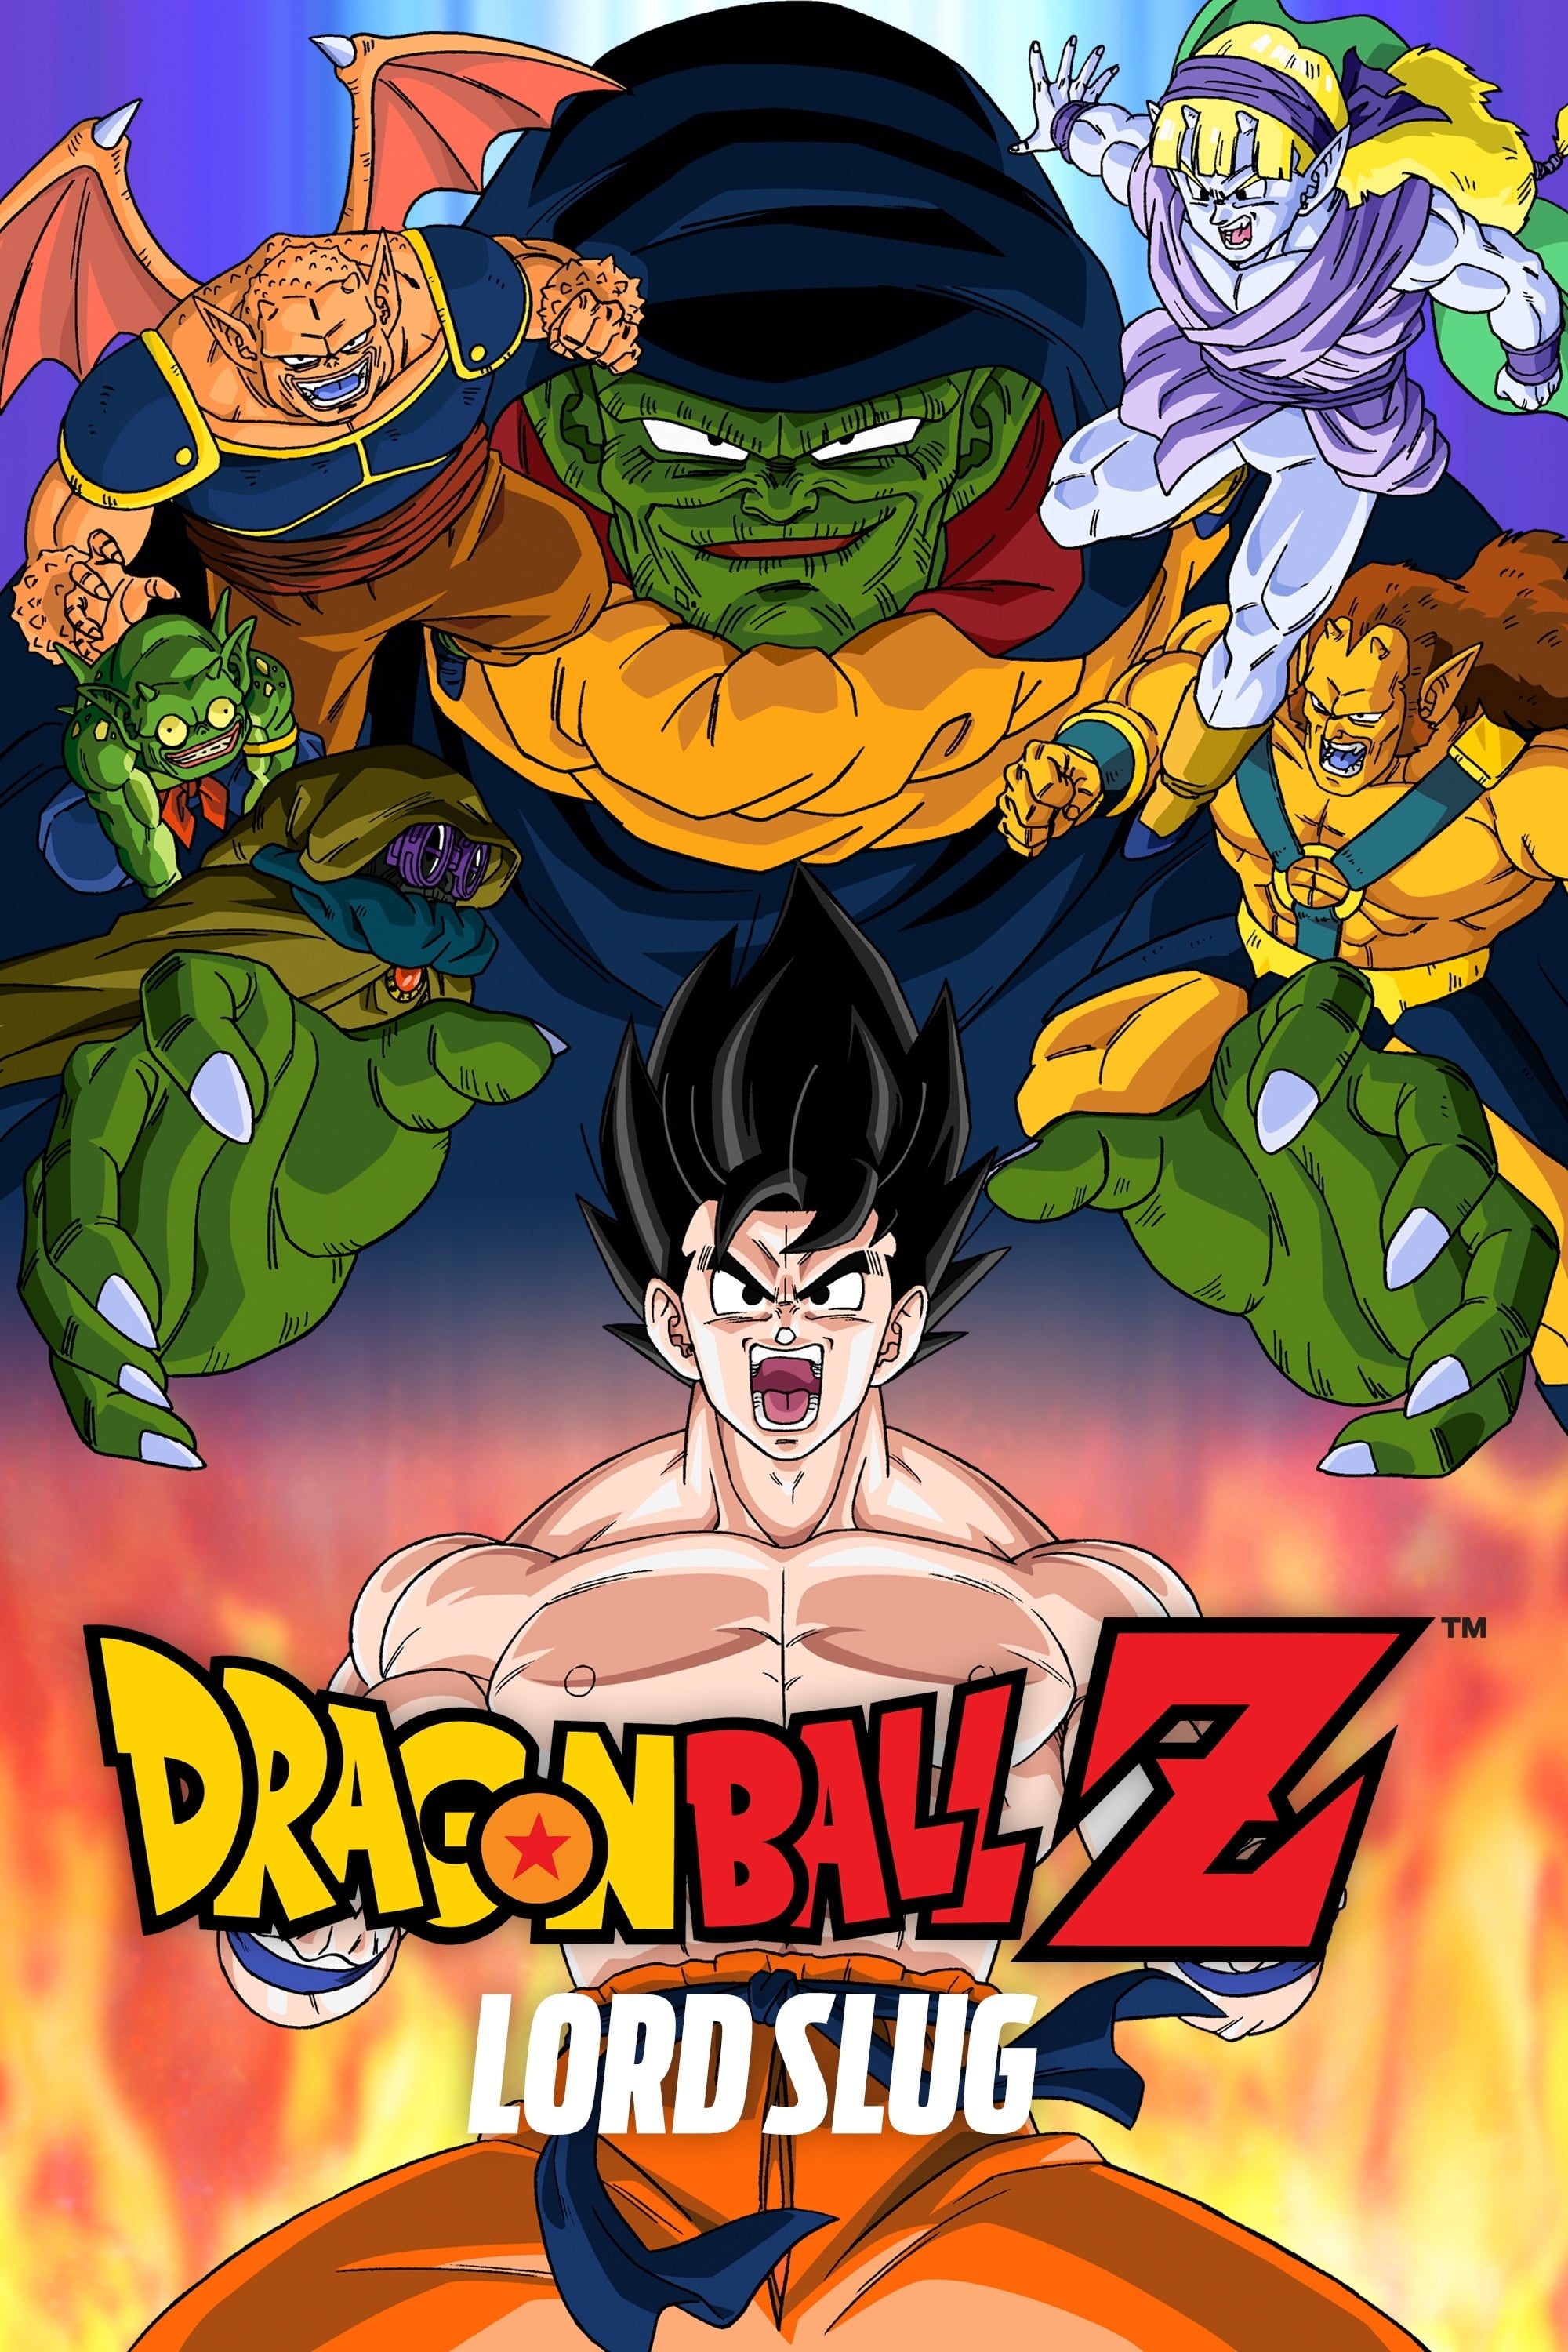 Dragonball Z: Super-Saiyajin Son-Goku (1991)